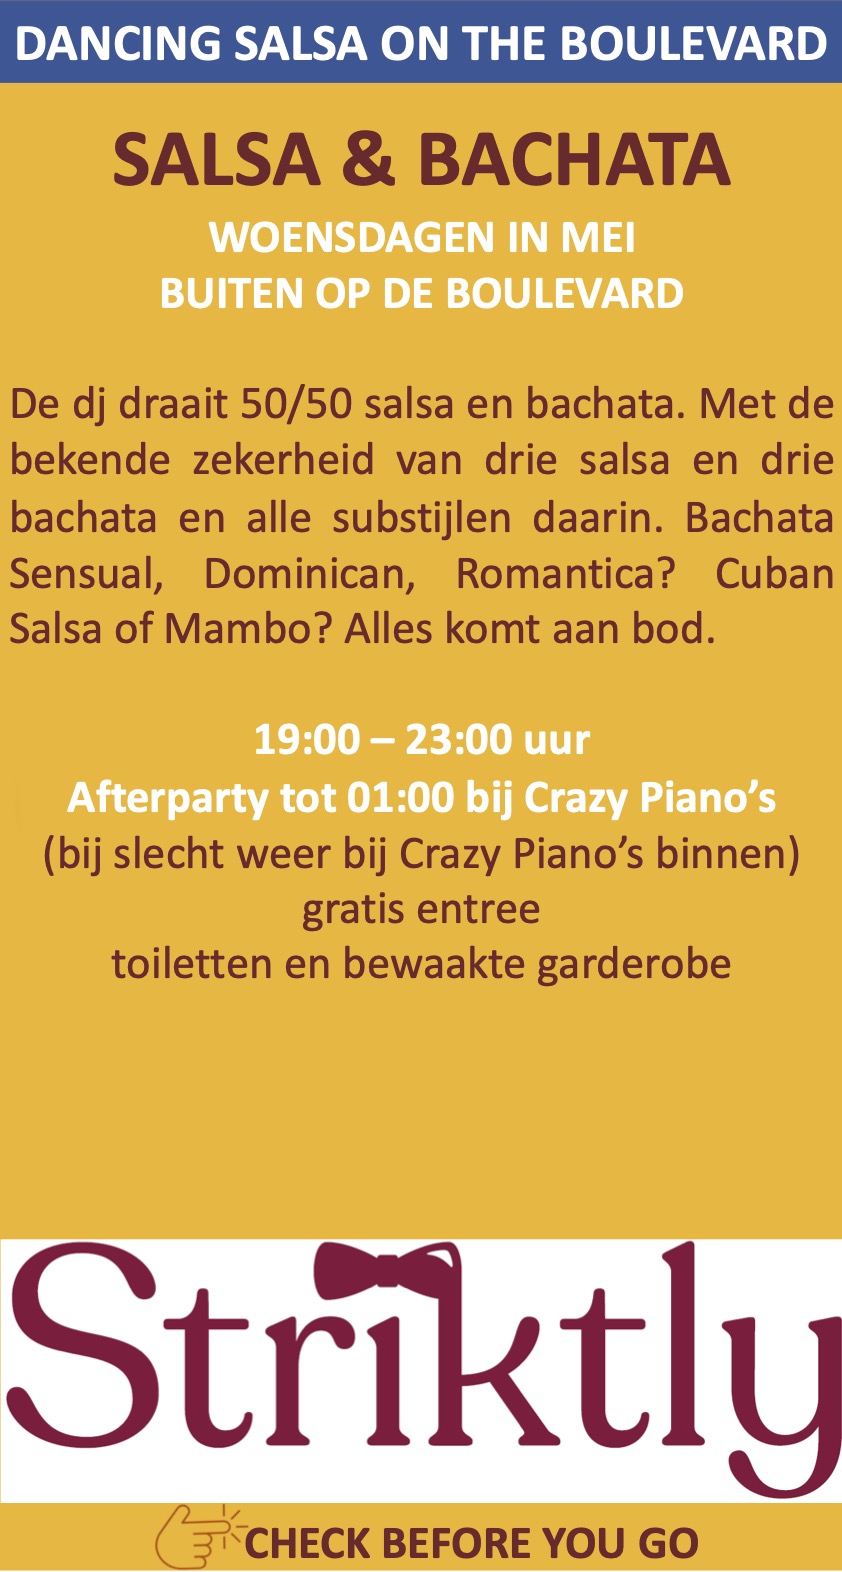 Striktly Salsa Boulevard Scheveningen Crazy Piano's